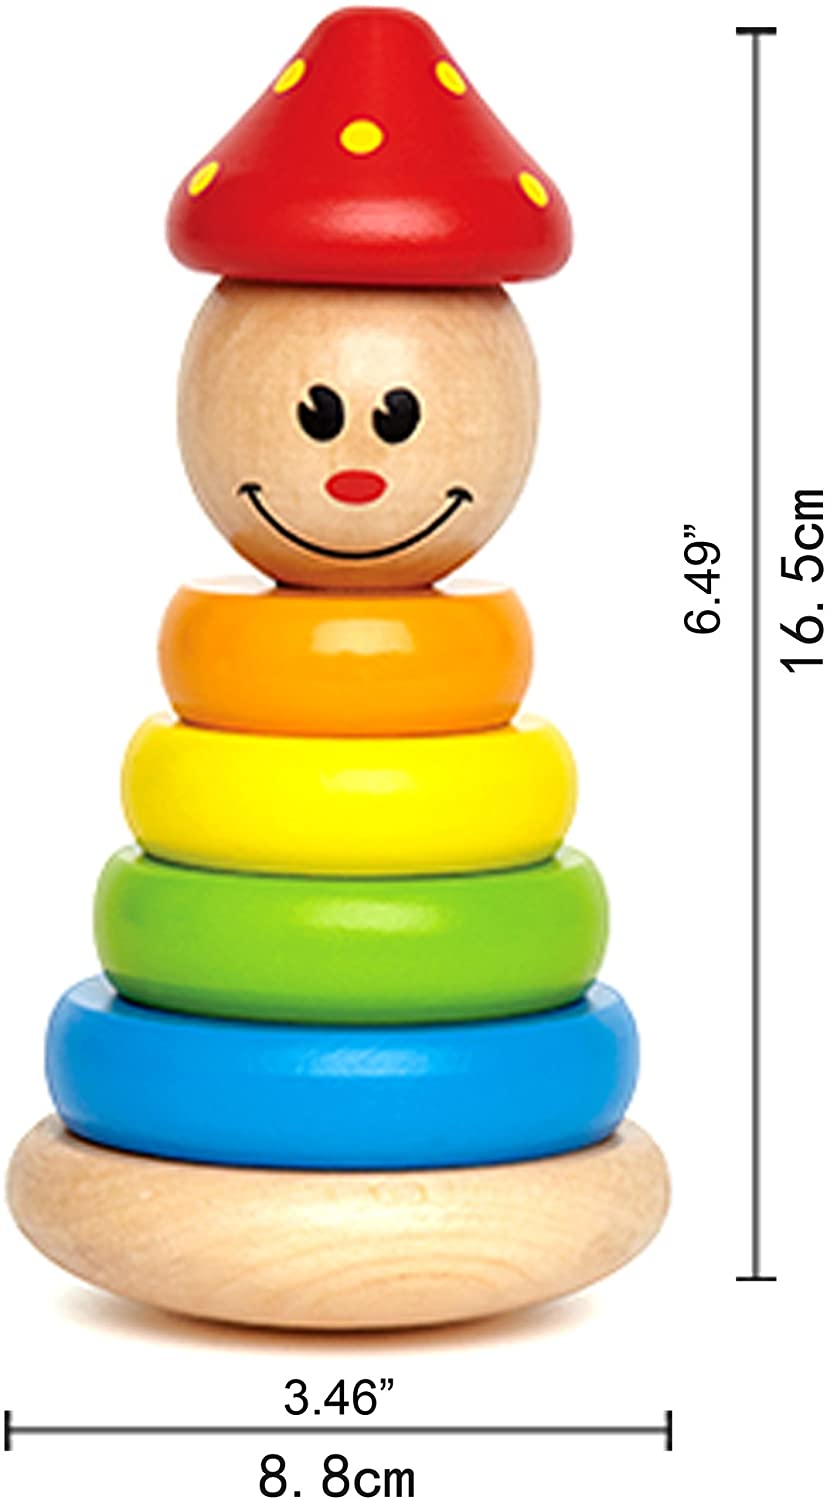 Hape Palhaço Empilhável Brinquedo de Madeira para Atividades Infantis